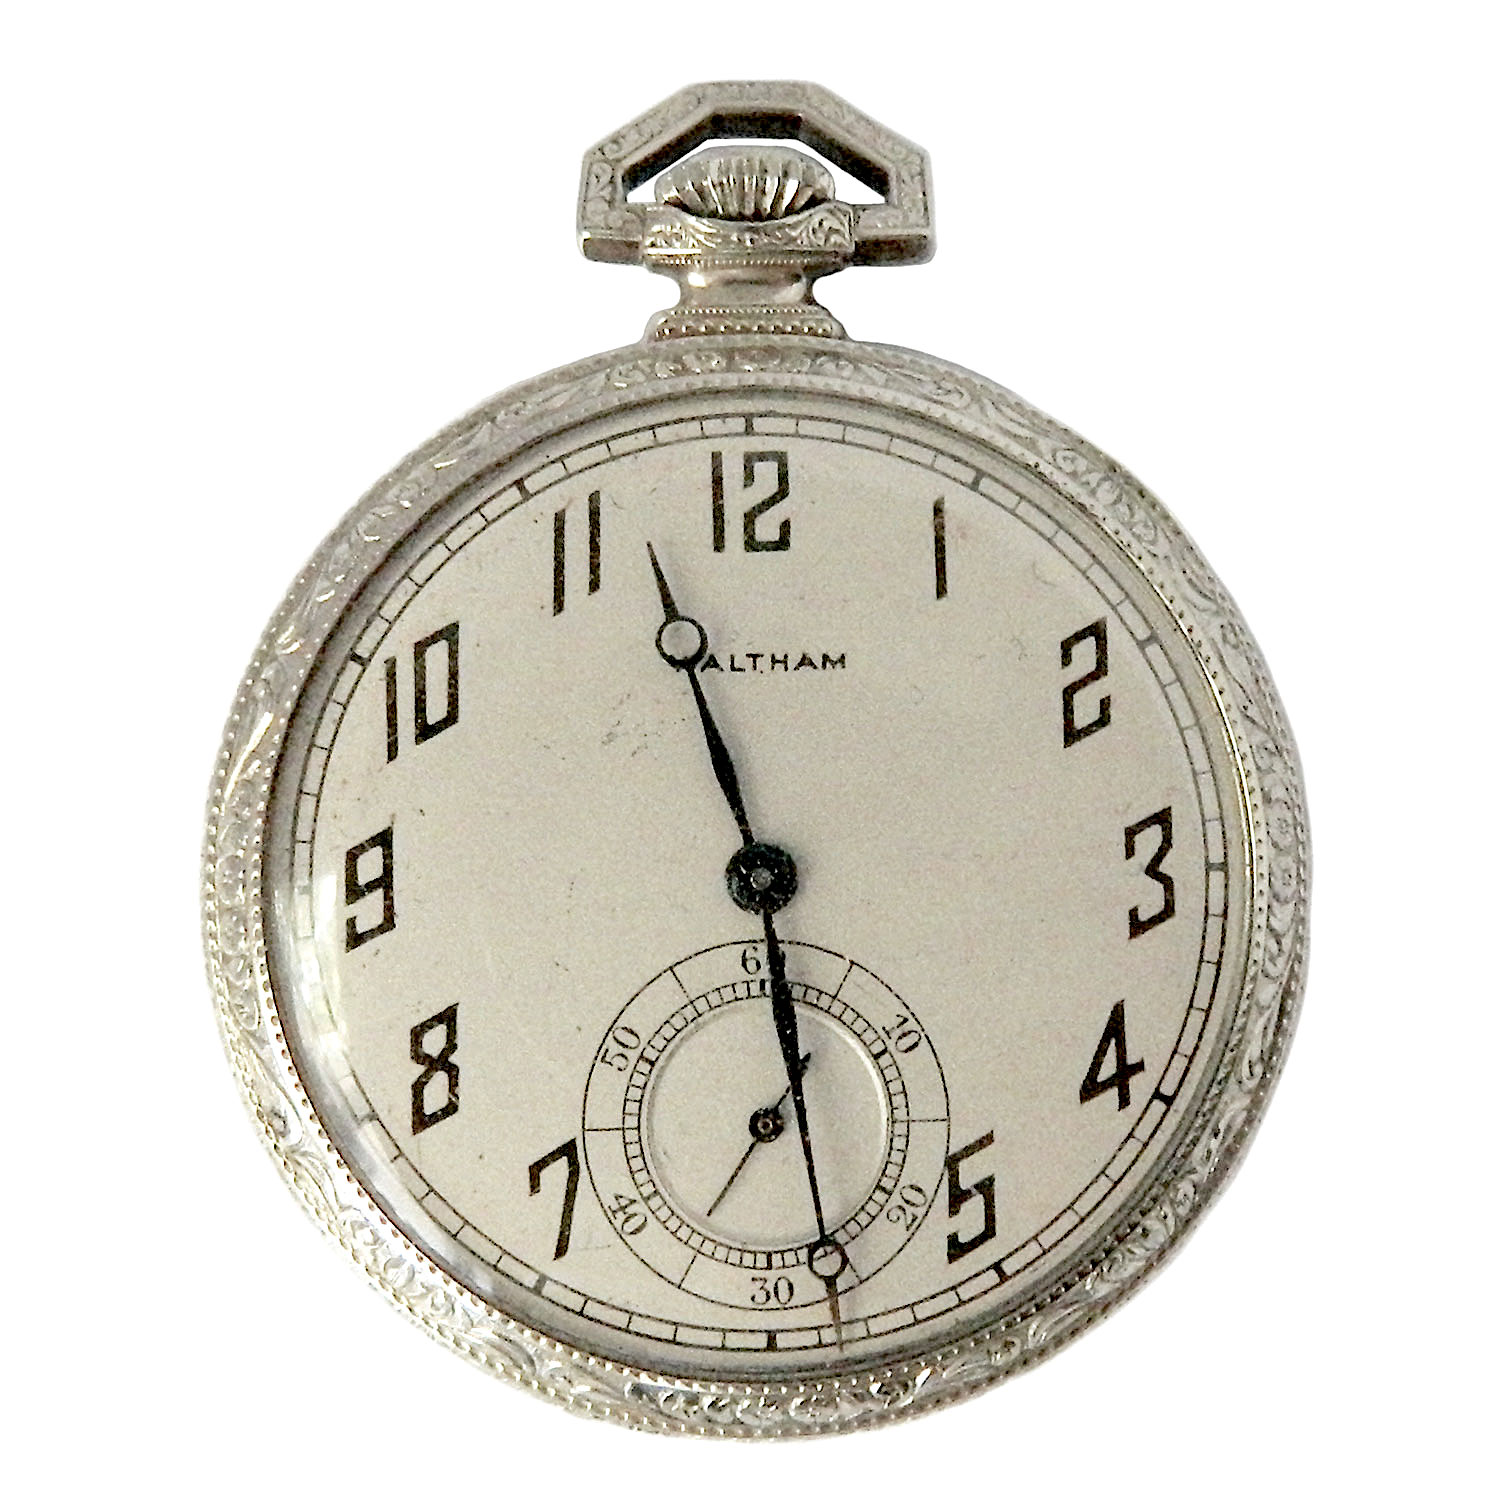 Antique Waltham pocket watch